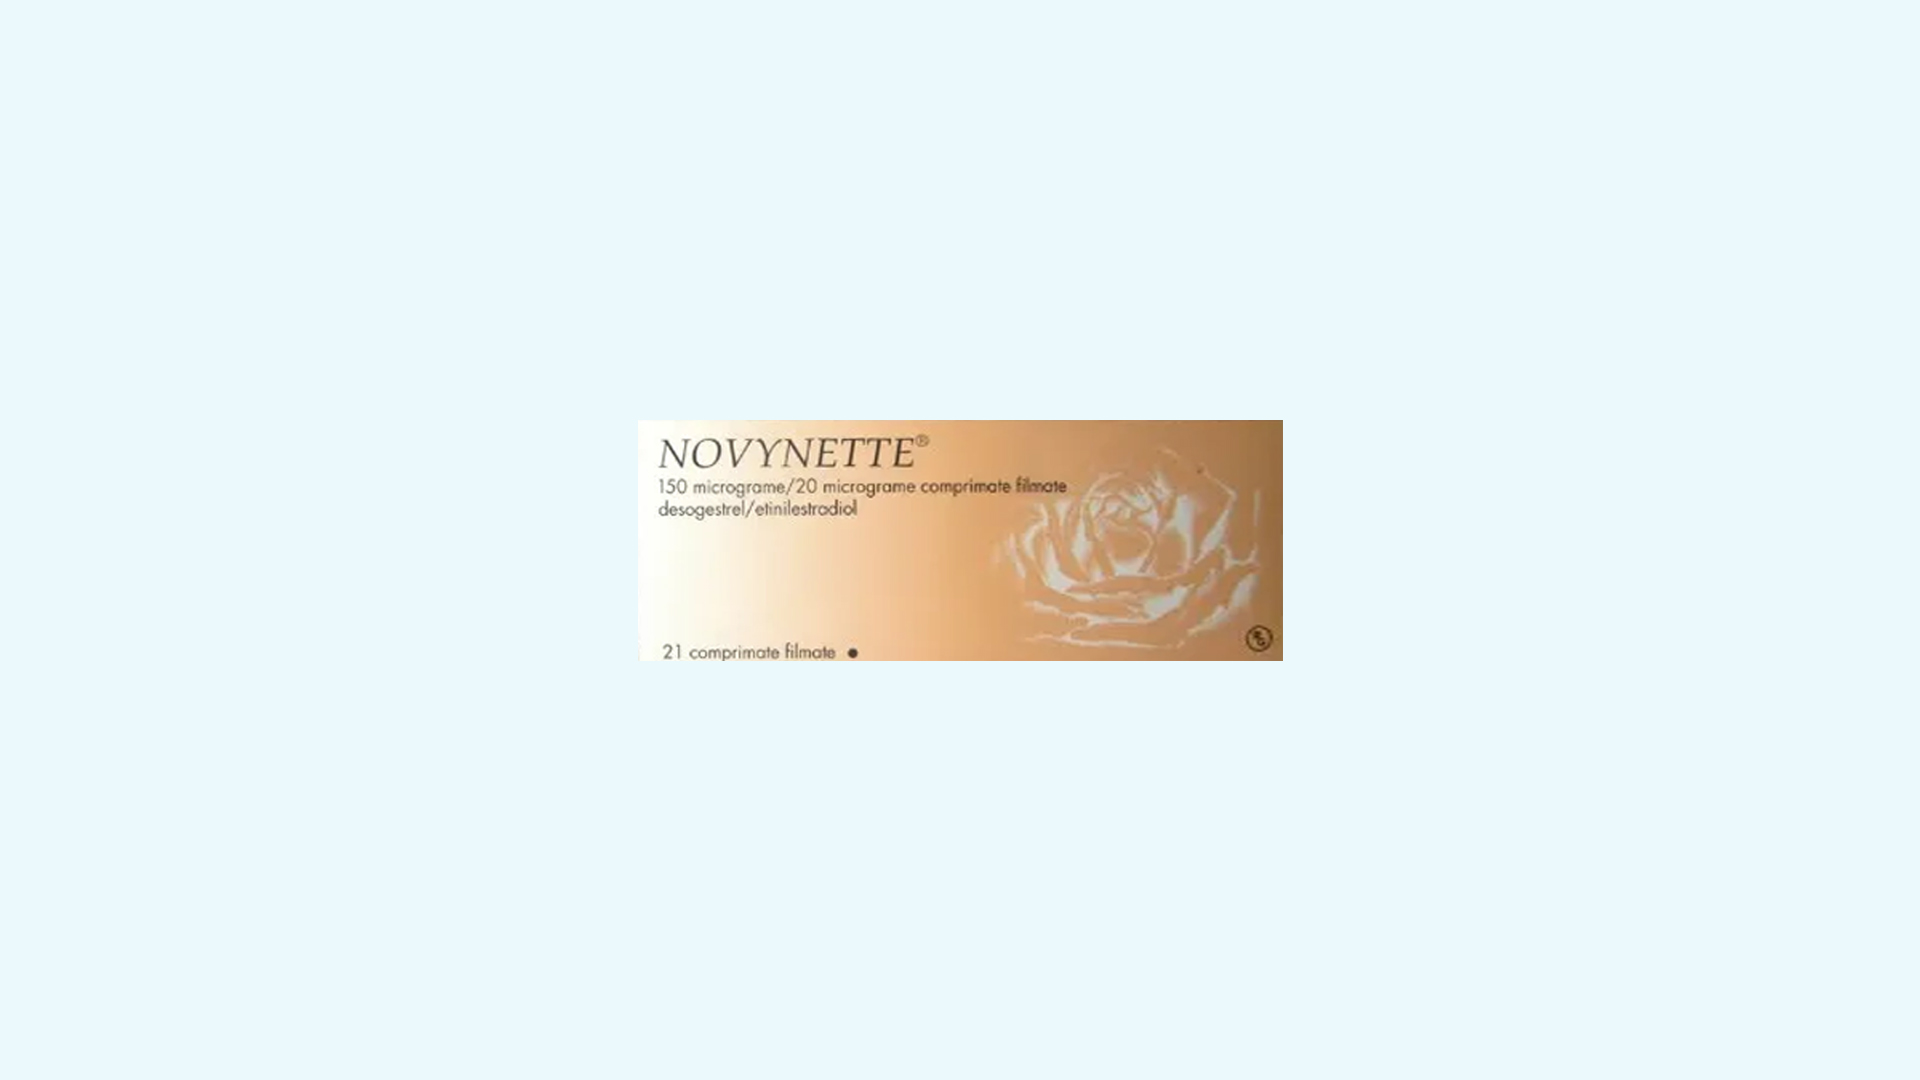 Novynette – informacje o leku, dawkowanie oraz przeciwwskazania